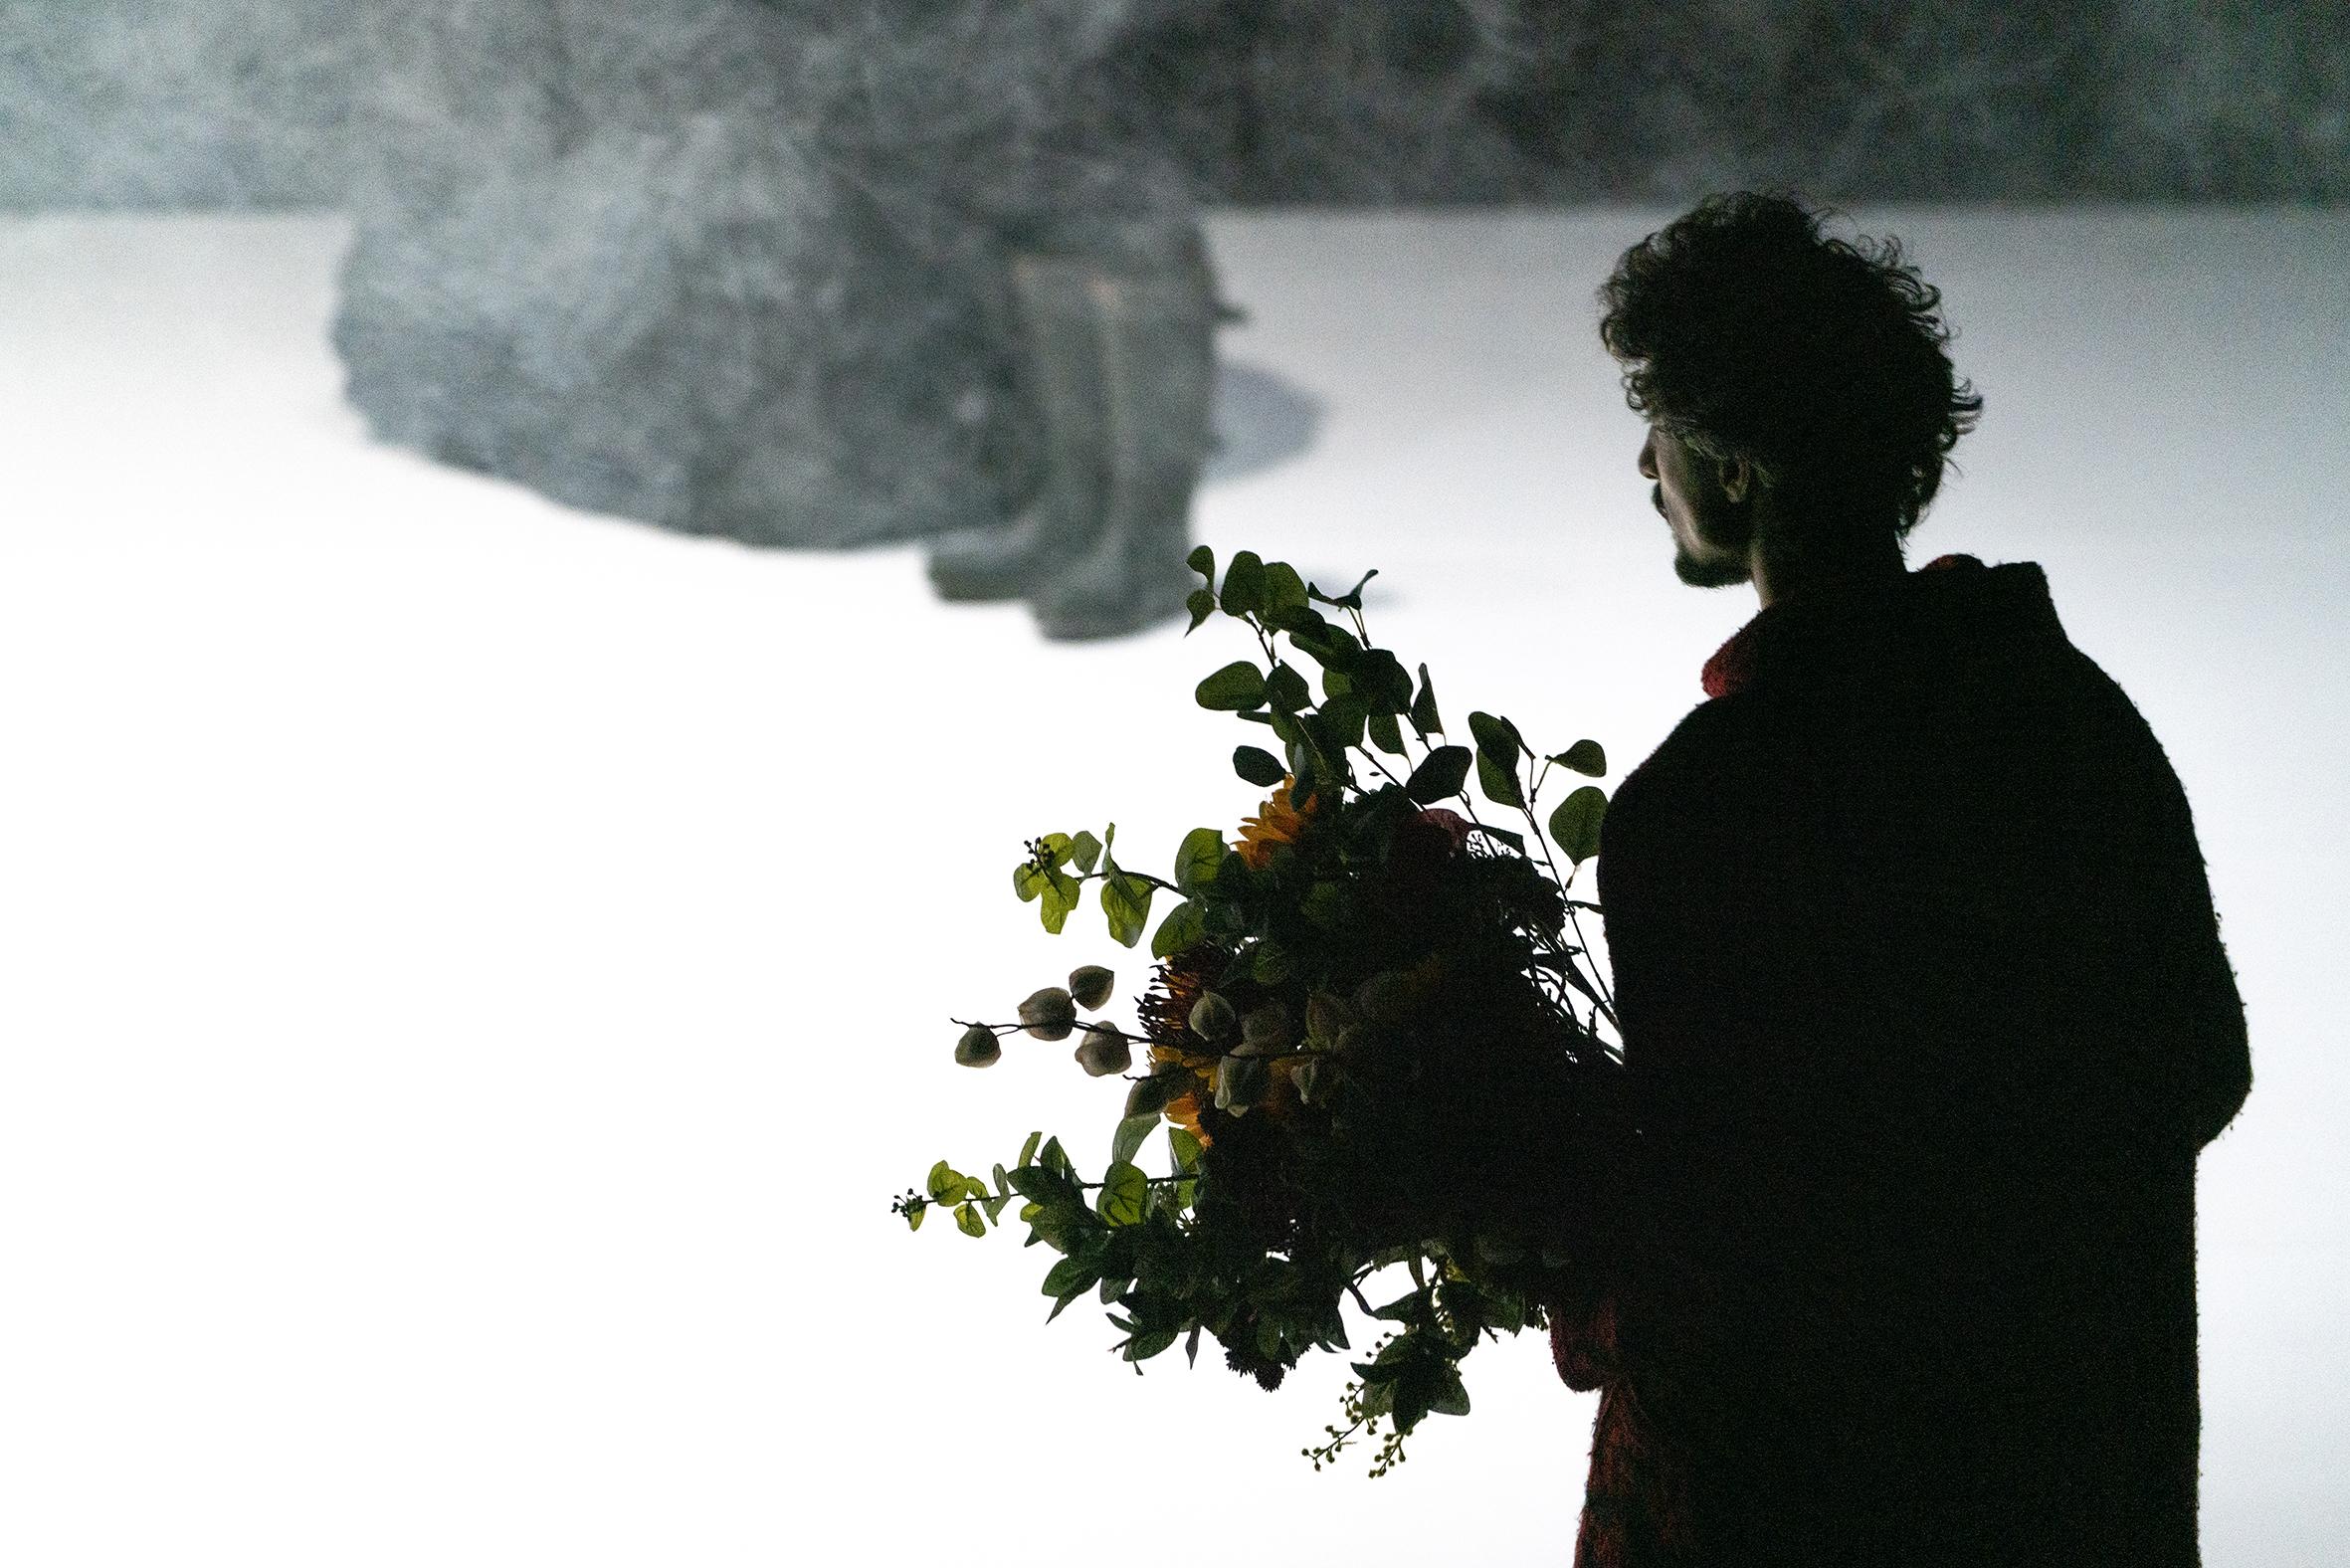 personne qui tient un bouquet de fleurs devant un espace brumeux